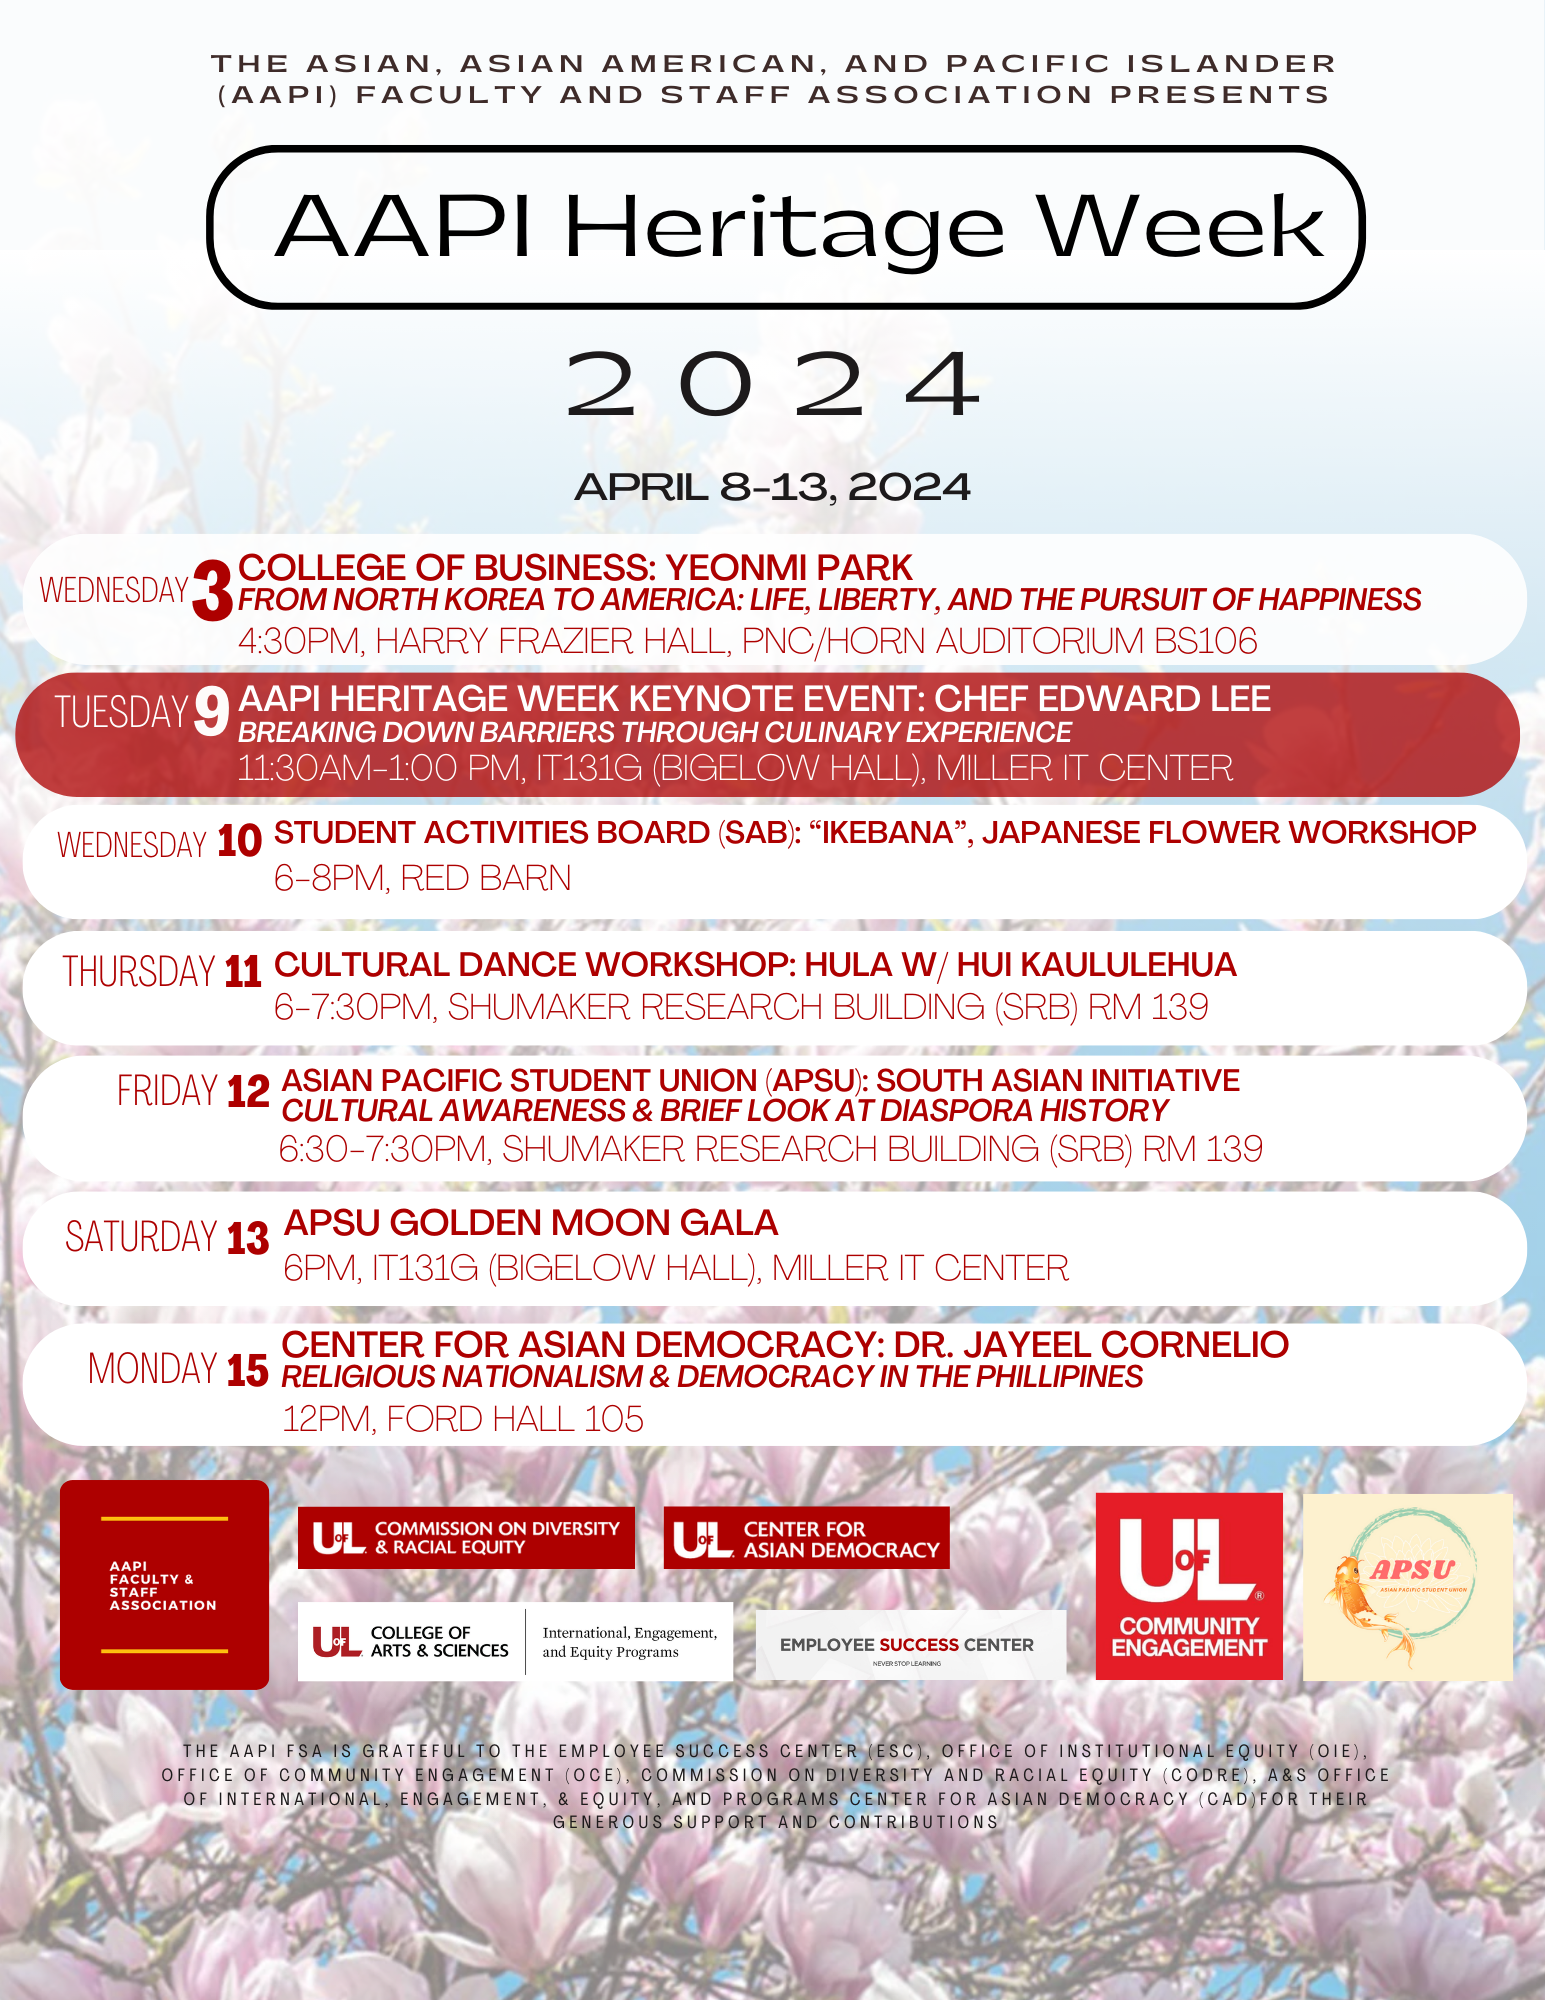 AAPI Heritage Week 2024